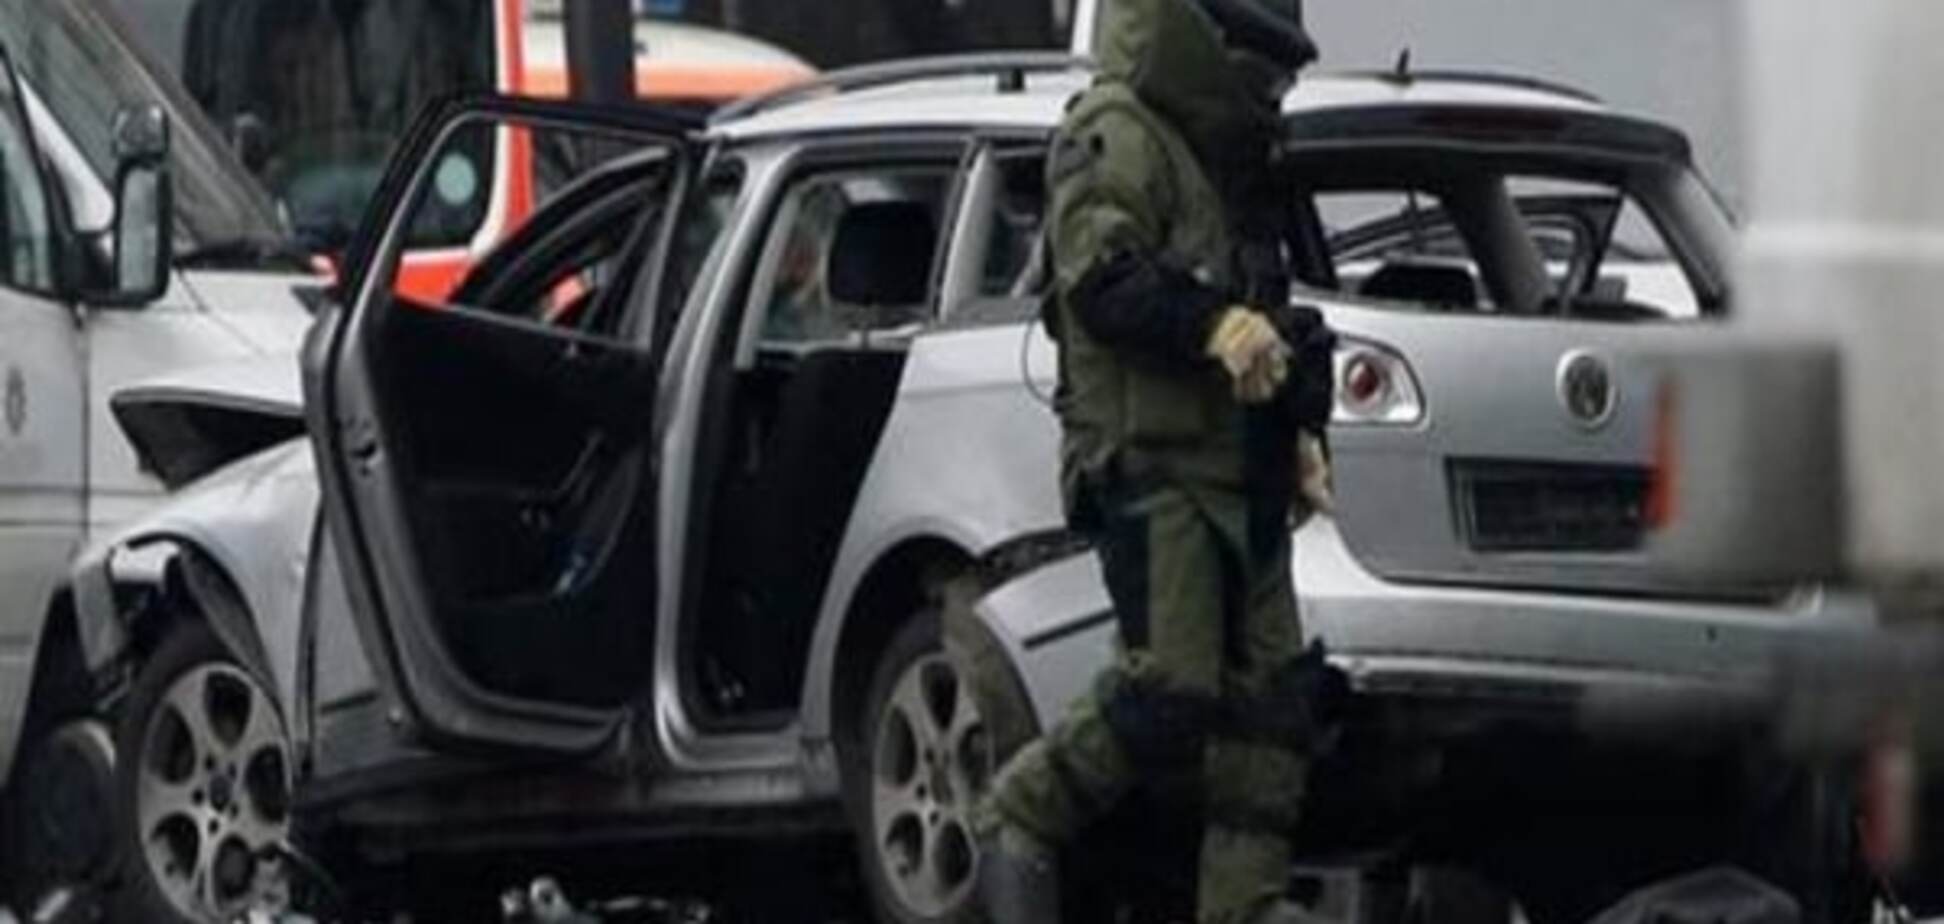 Теракт или разборки мафии? СМИ сообщили новые подробности взрыва в Берлине